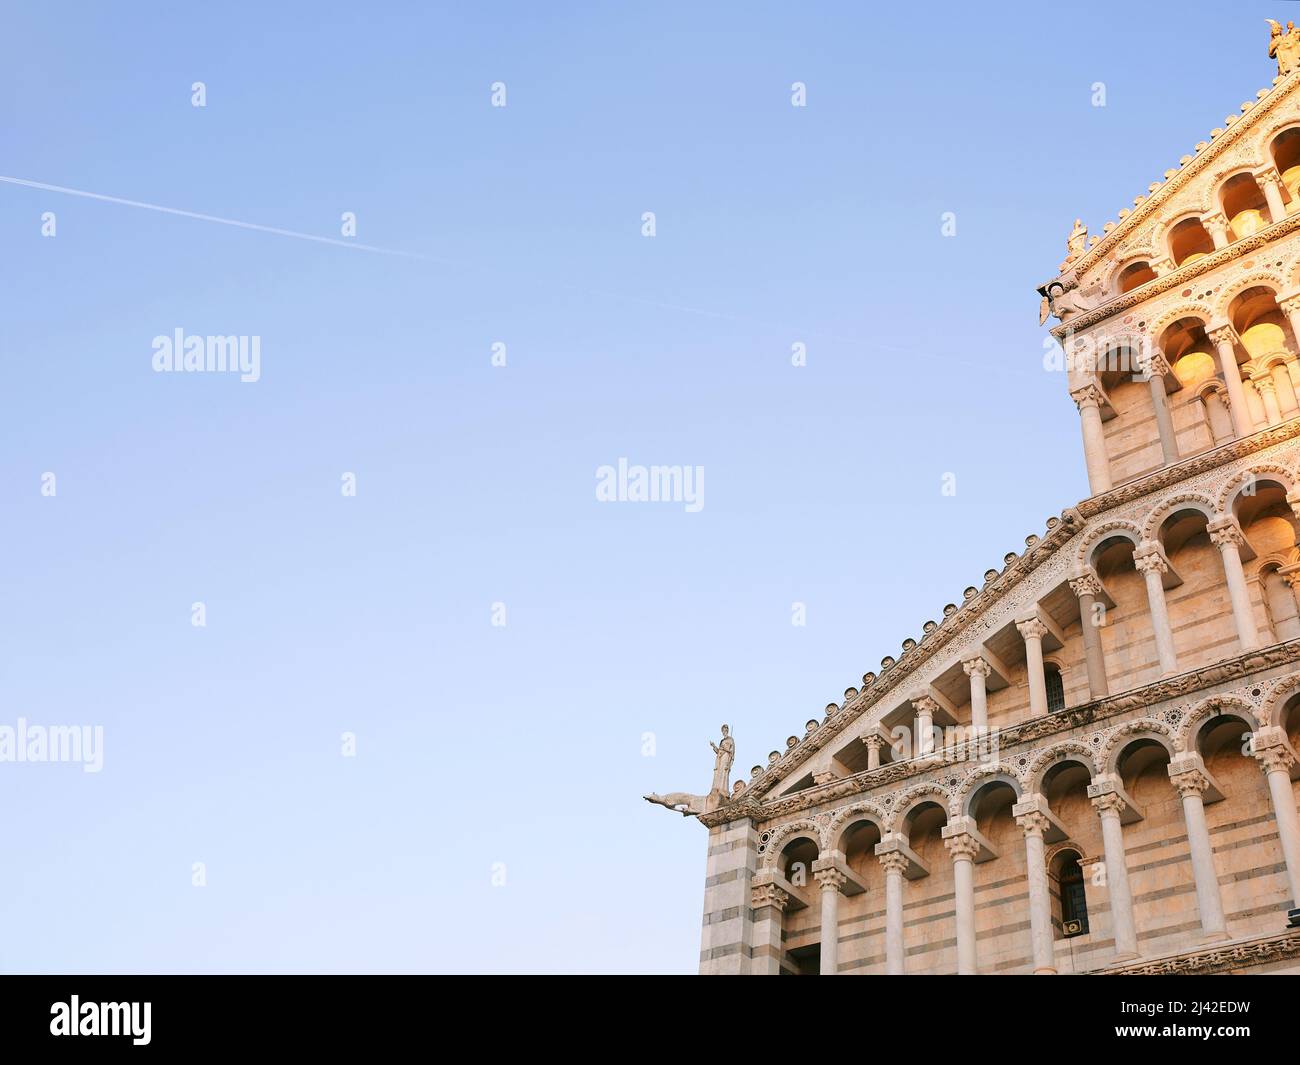 PISA, ITALIA - 15 DE OCTUBRE de 2021: Vista a la Catedral de Pisa de la Asunción de la Santísima Virgen María - Catedral de Pisa y la torre inclinada de Pisa Foto de stock